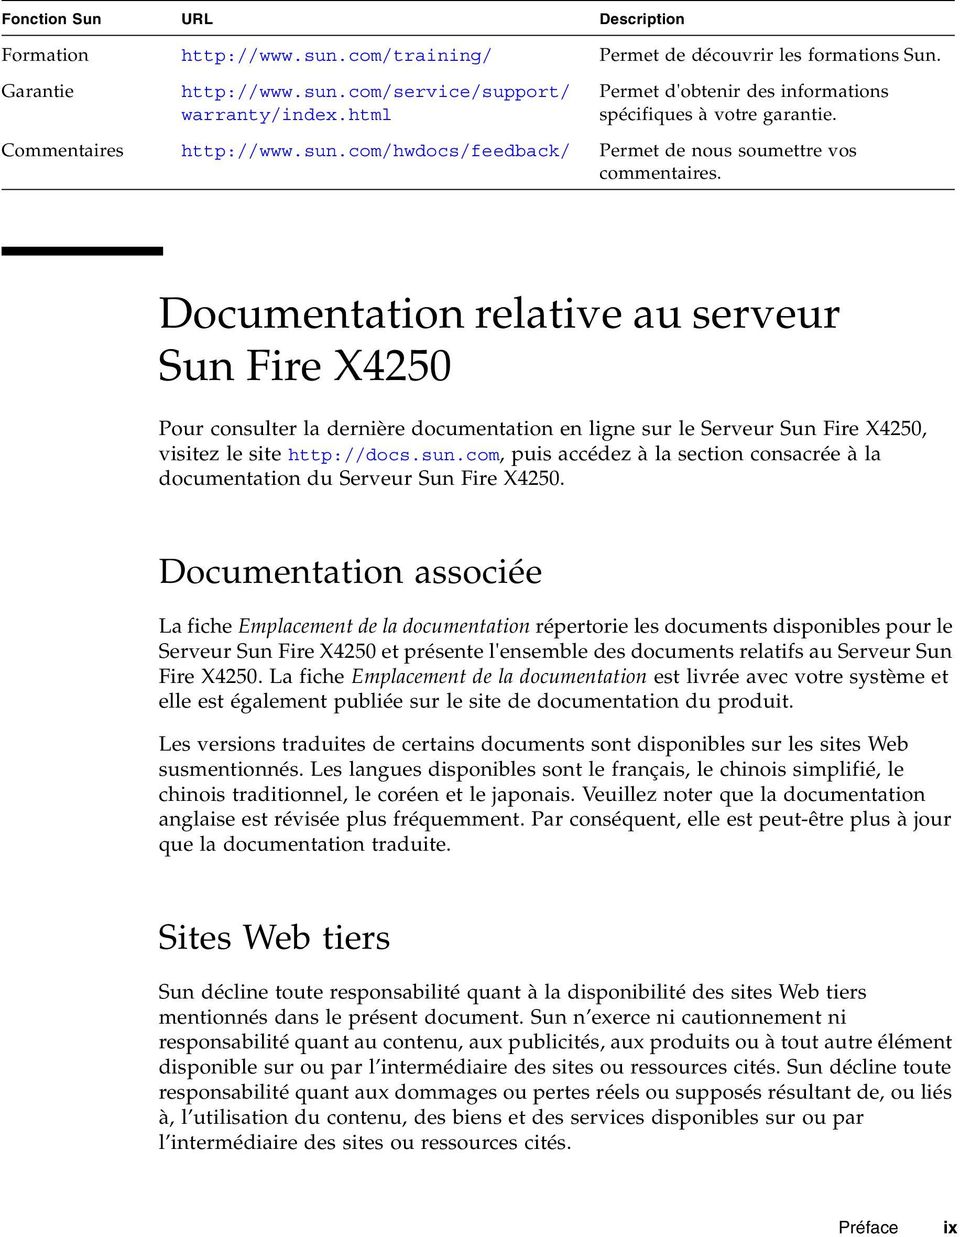 Documentation relative au serveur Sun Fire X4250 Pour consulter la dernière documentation en ligne sur le Serveur Sun Fire X4250, visitez le site http://docs.sun.